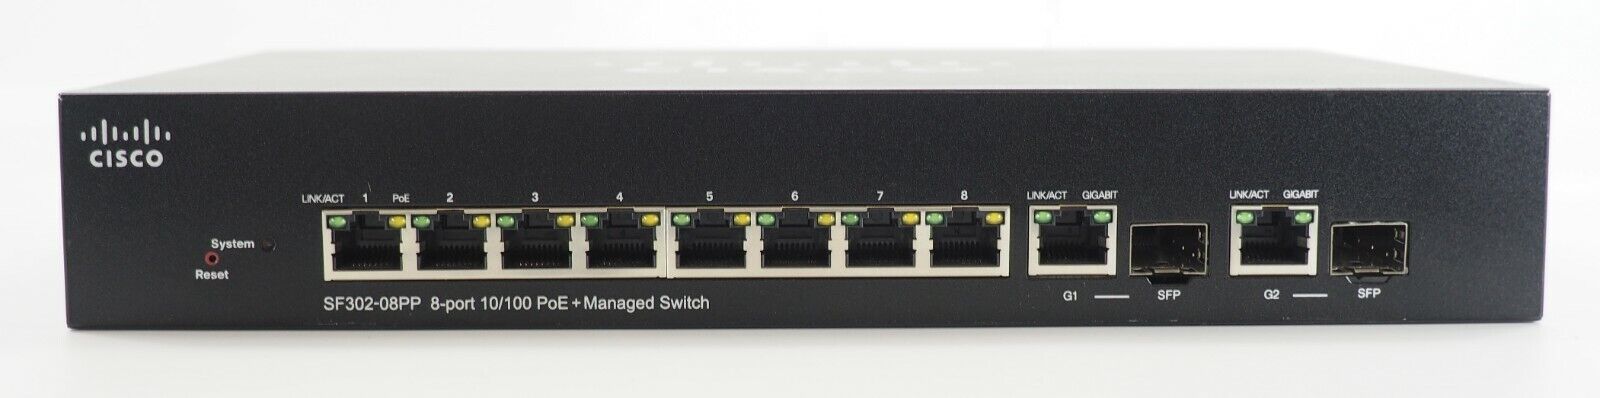 Cisco SF302-08PP 8-Port 10/100 PoE + Managed Switch SF302-08PP-K9 V01